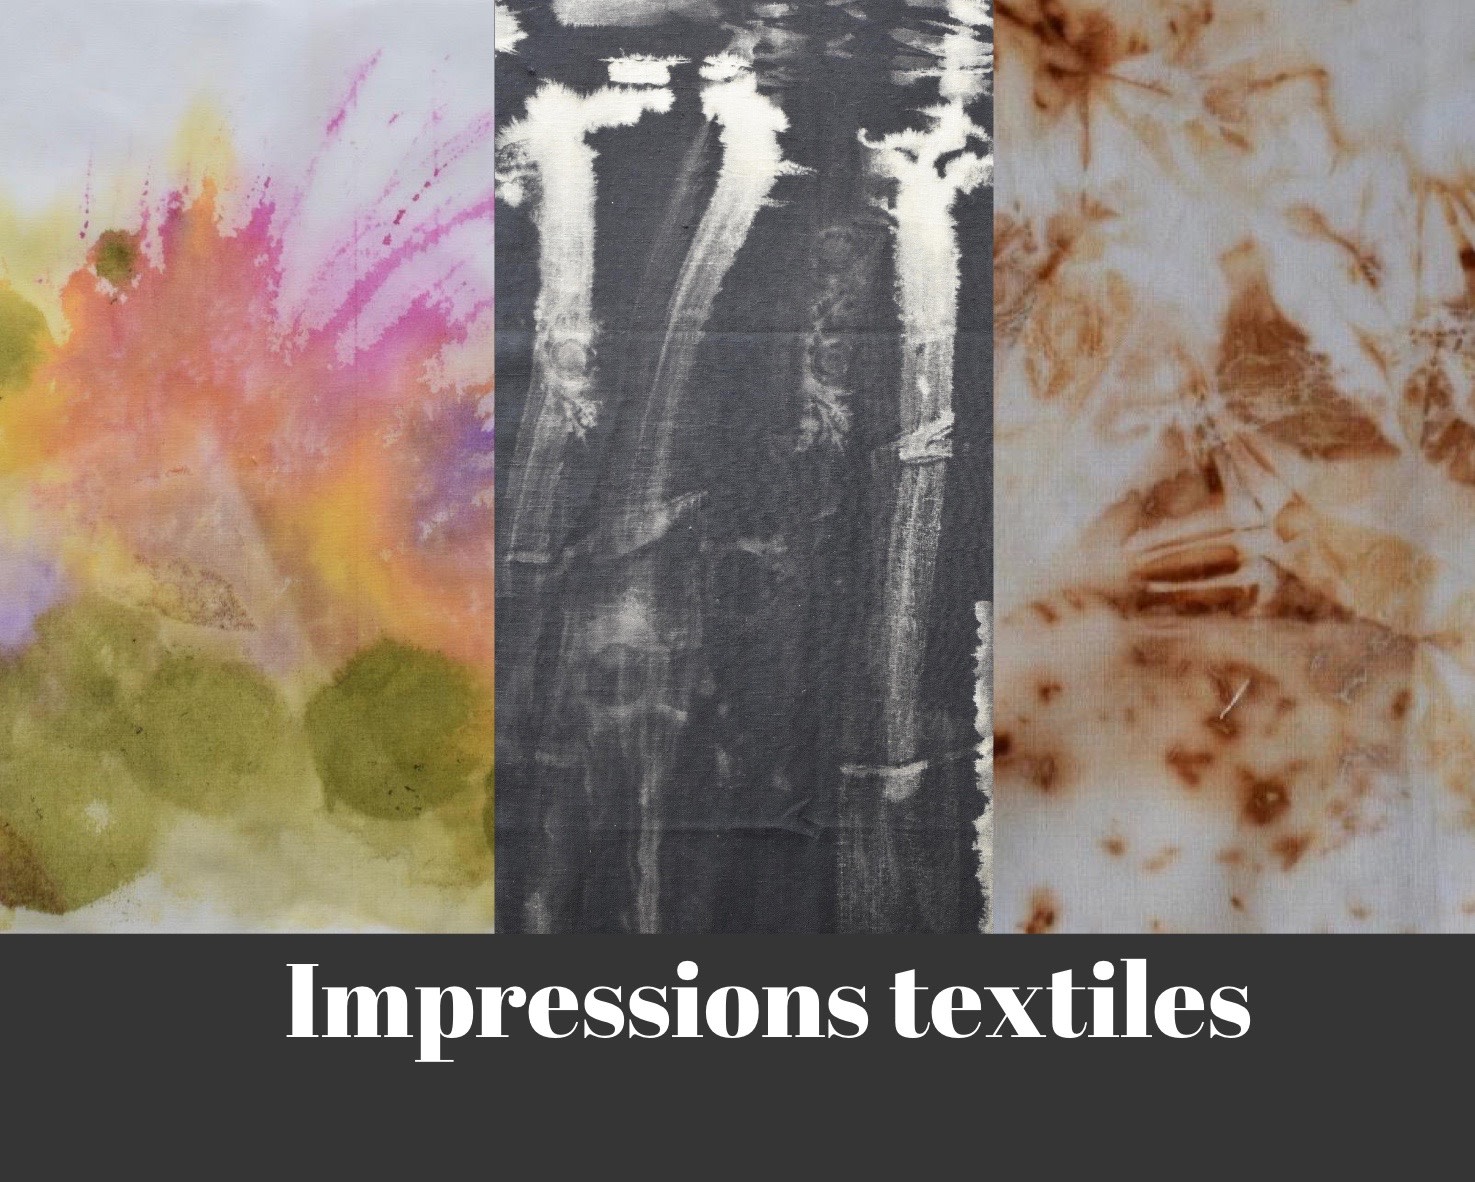 Impression textile, Kim Collin 